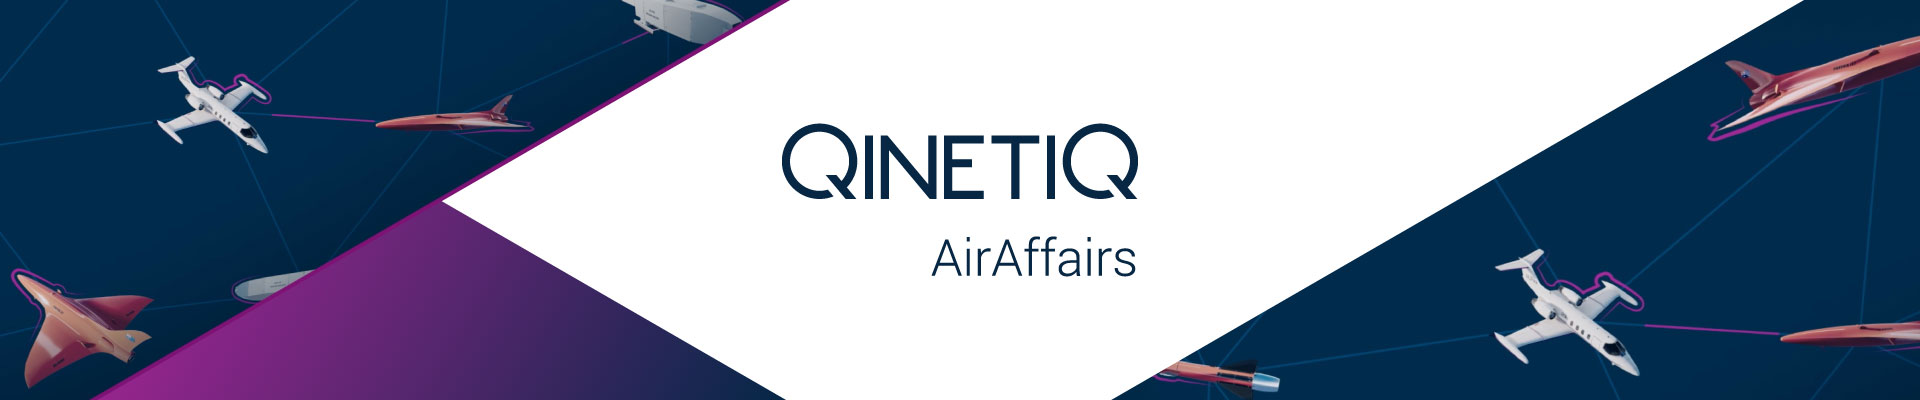 QinetiQ Air Affairs